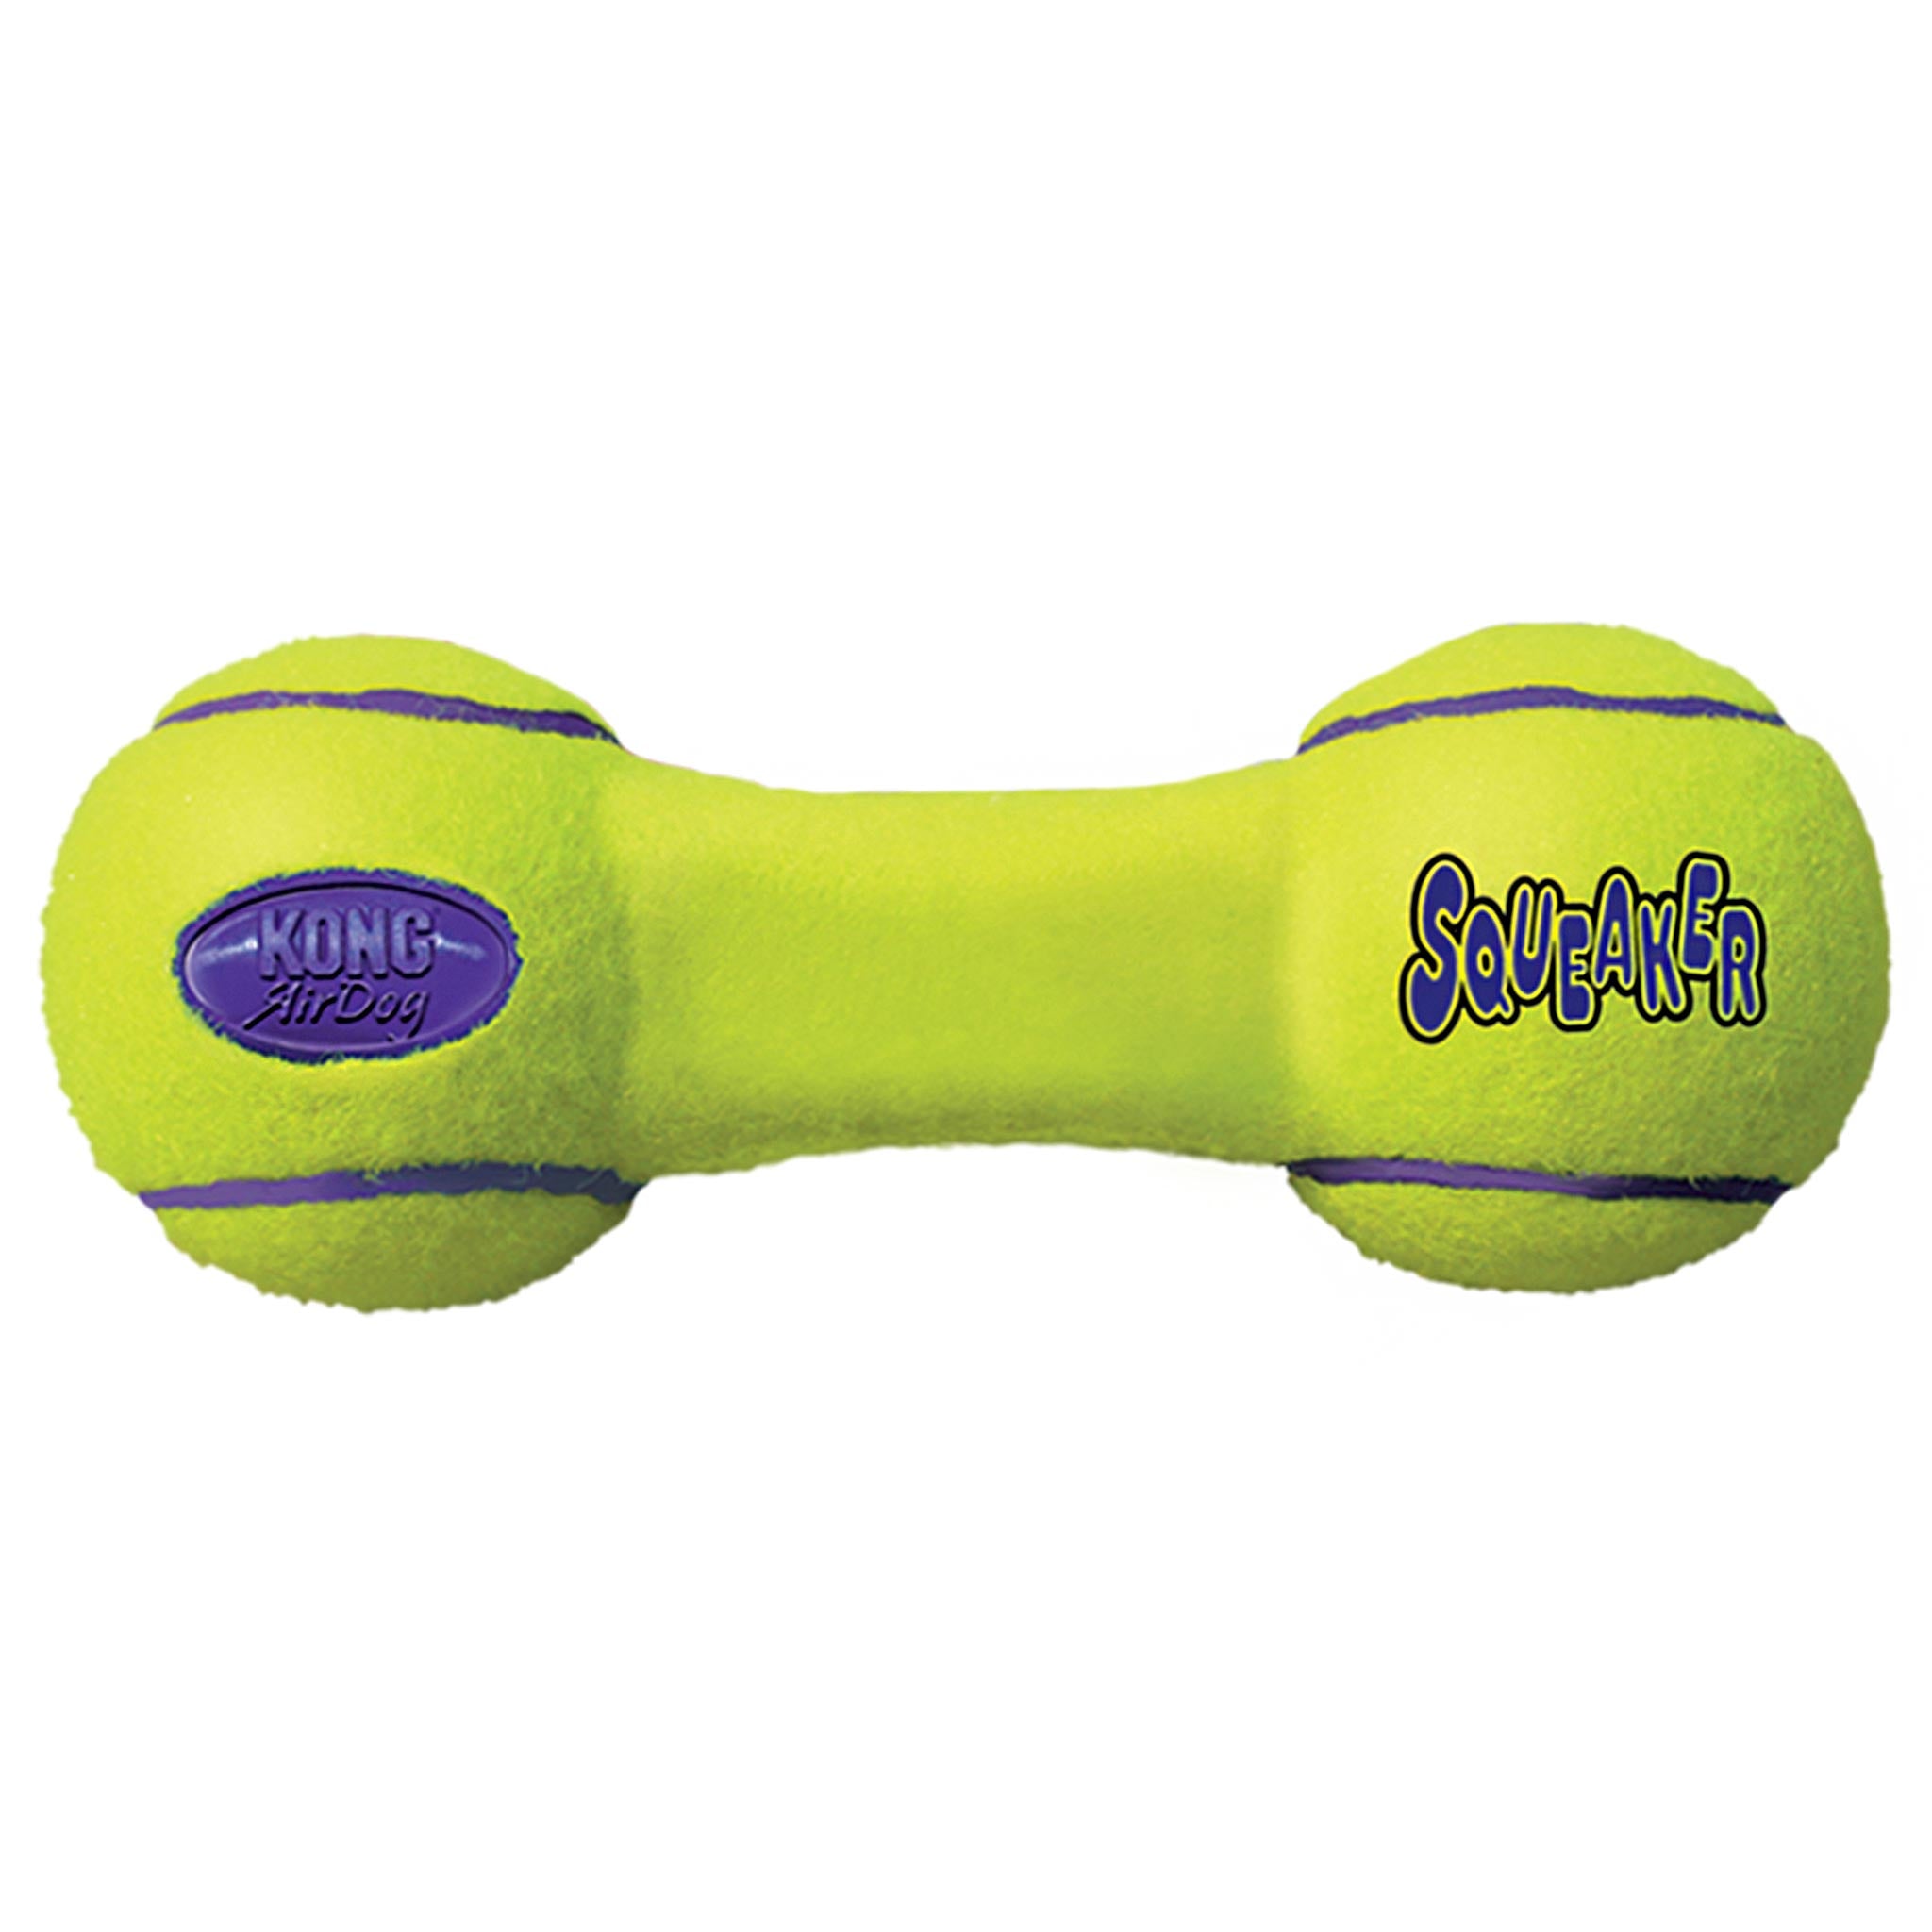 Игрушка для собак гантель. Игрушка для собак Kong AIRDOG Squeaker гантель средняя 18 см. Гантель для собак Kong Air asdb3. Kong игрушка для собак Air "гантель" большая 23 см.